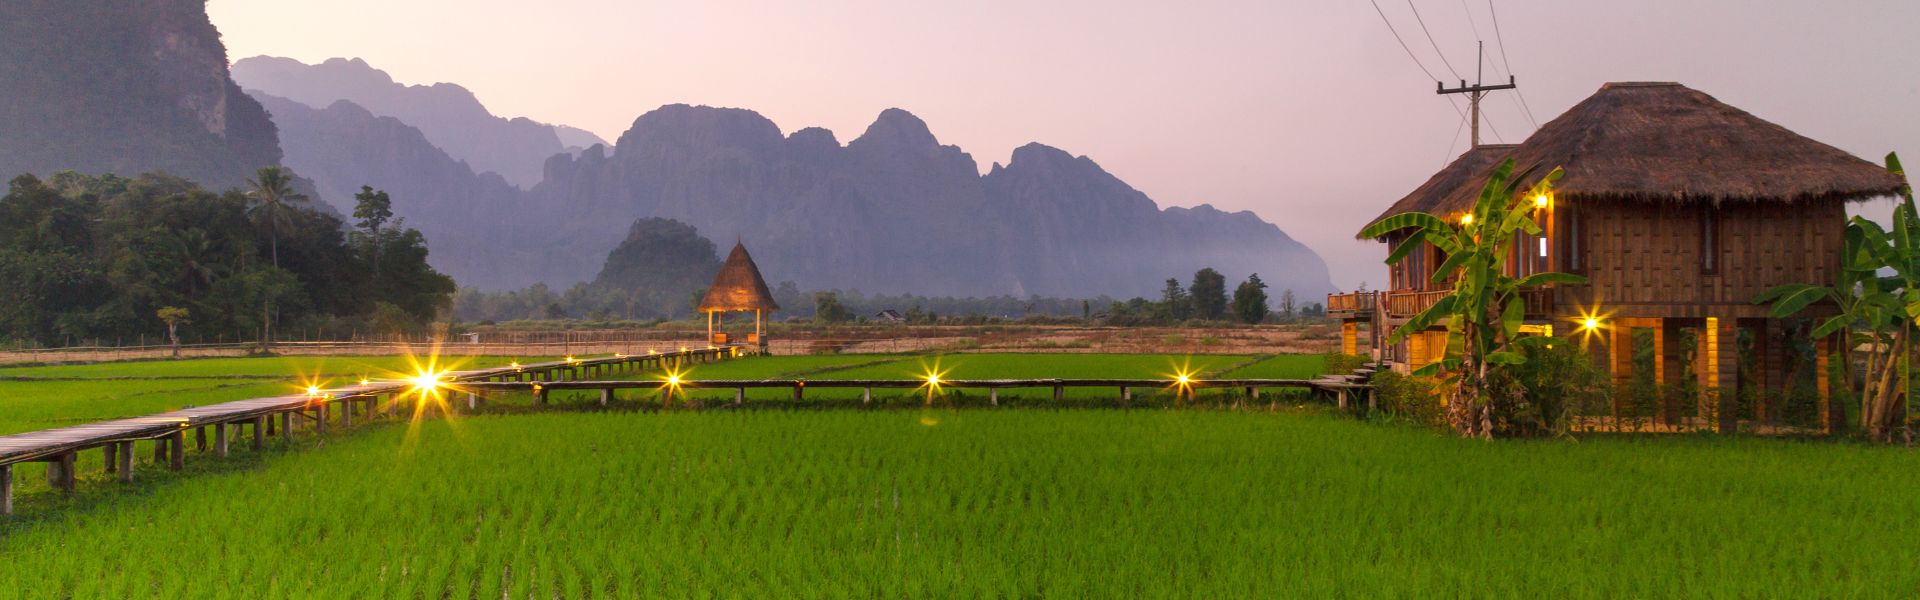 Mejor época para viajar a Laos